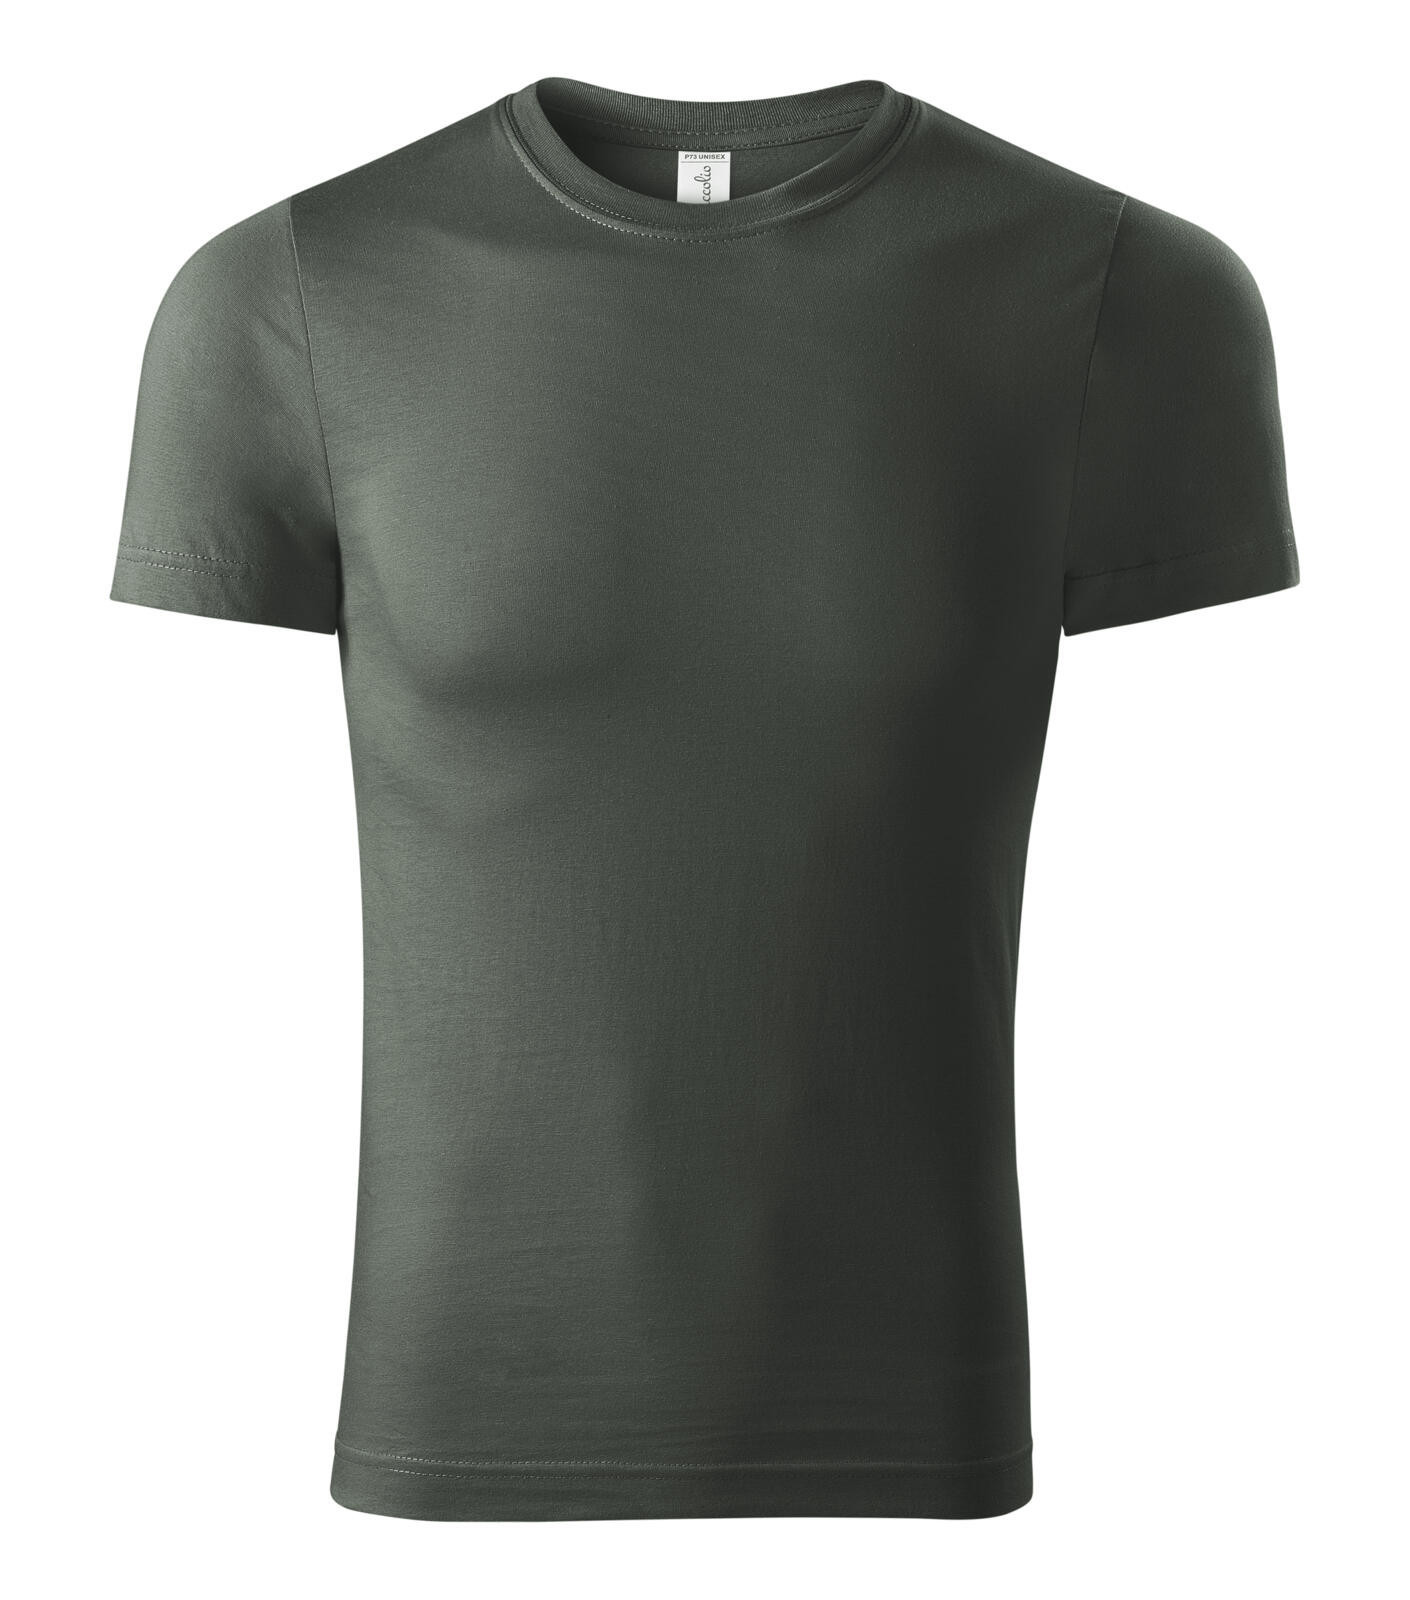 Unisex tričko Piccolio Paint P73 - veľkosť: L, farba: tmavá bridlica